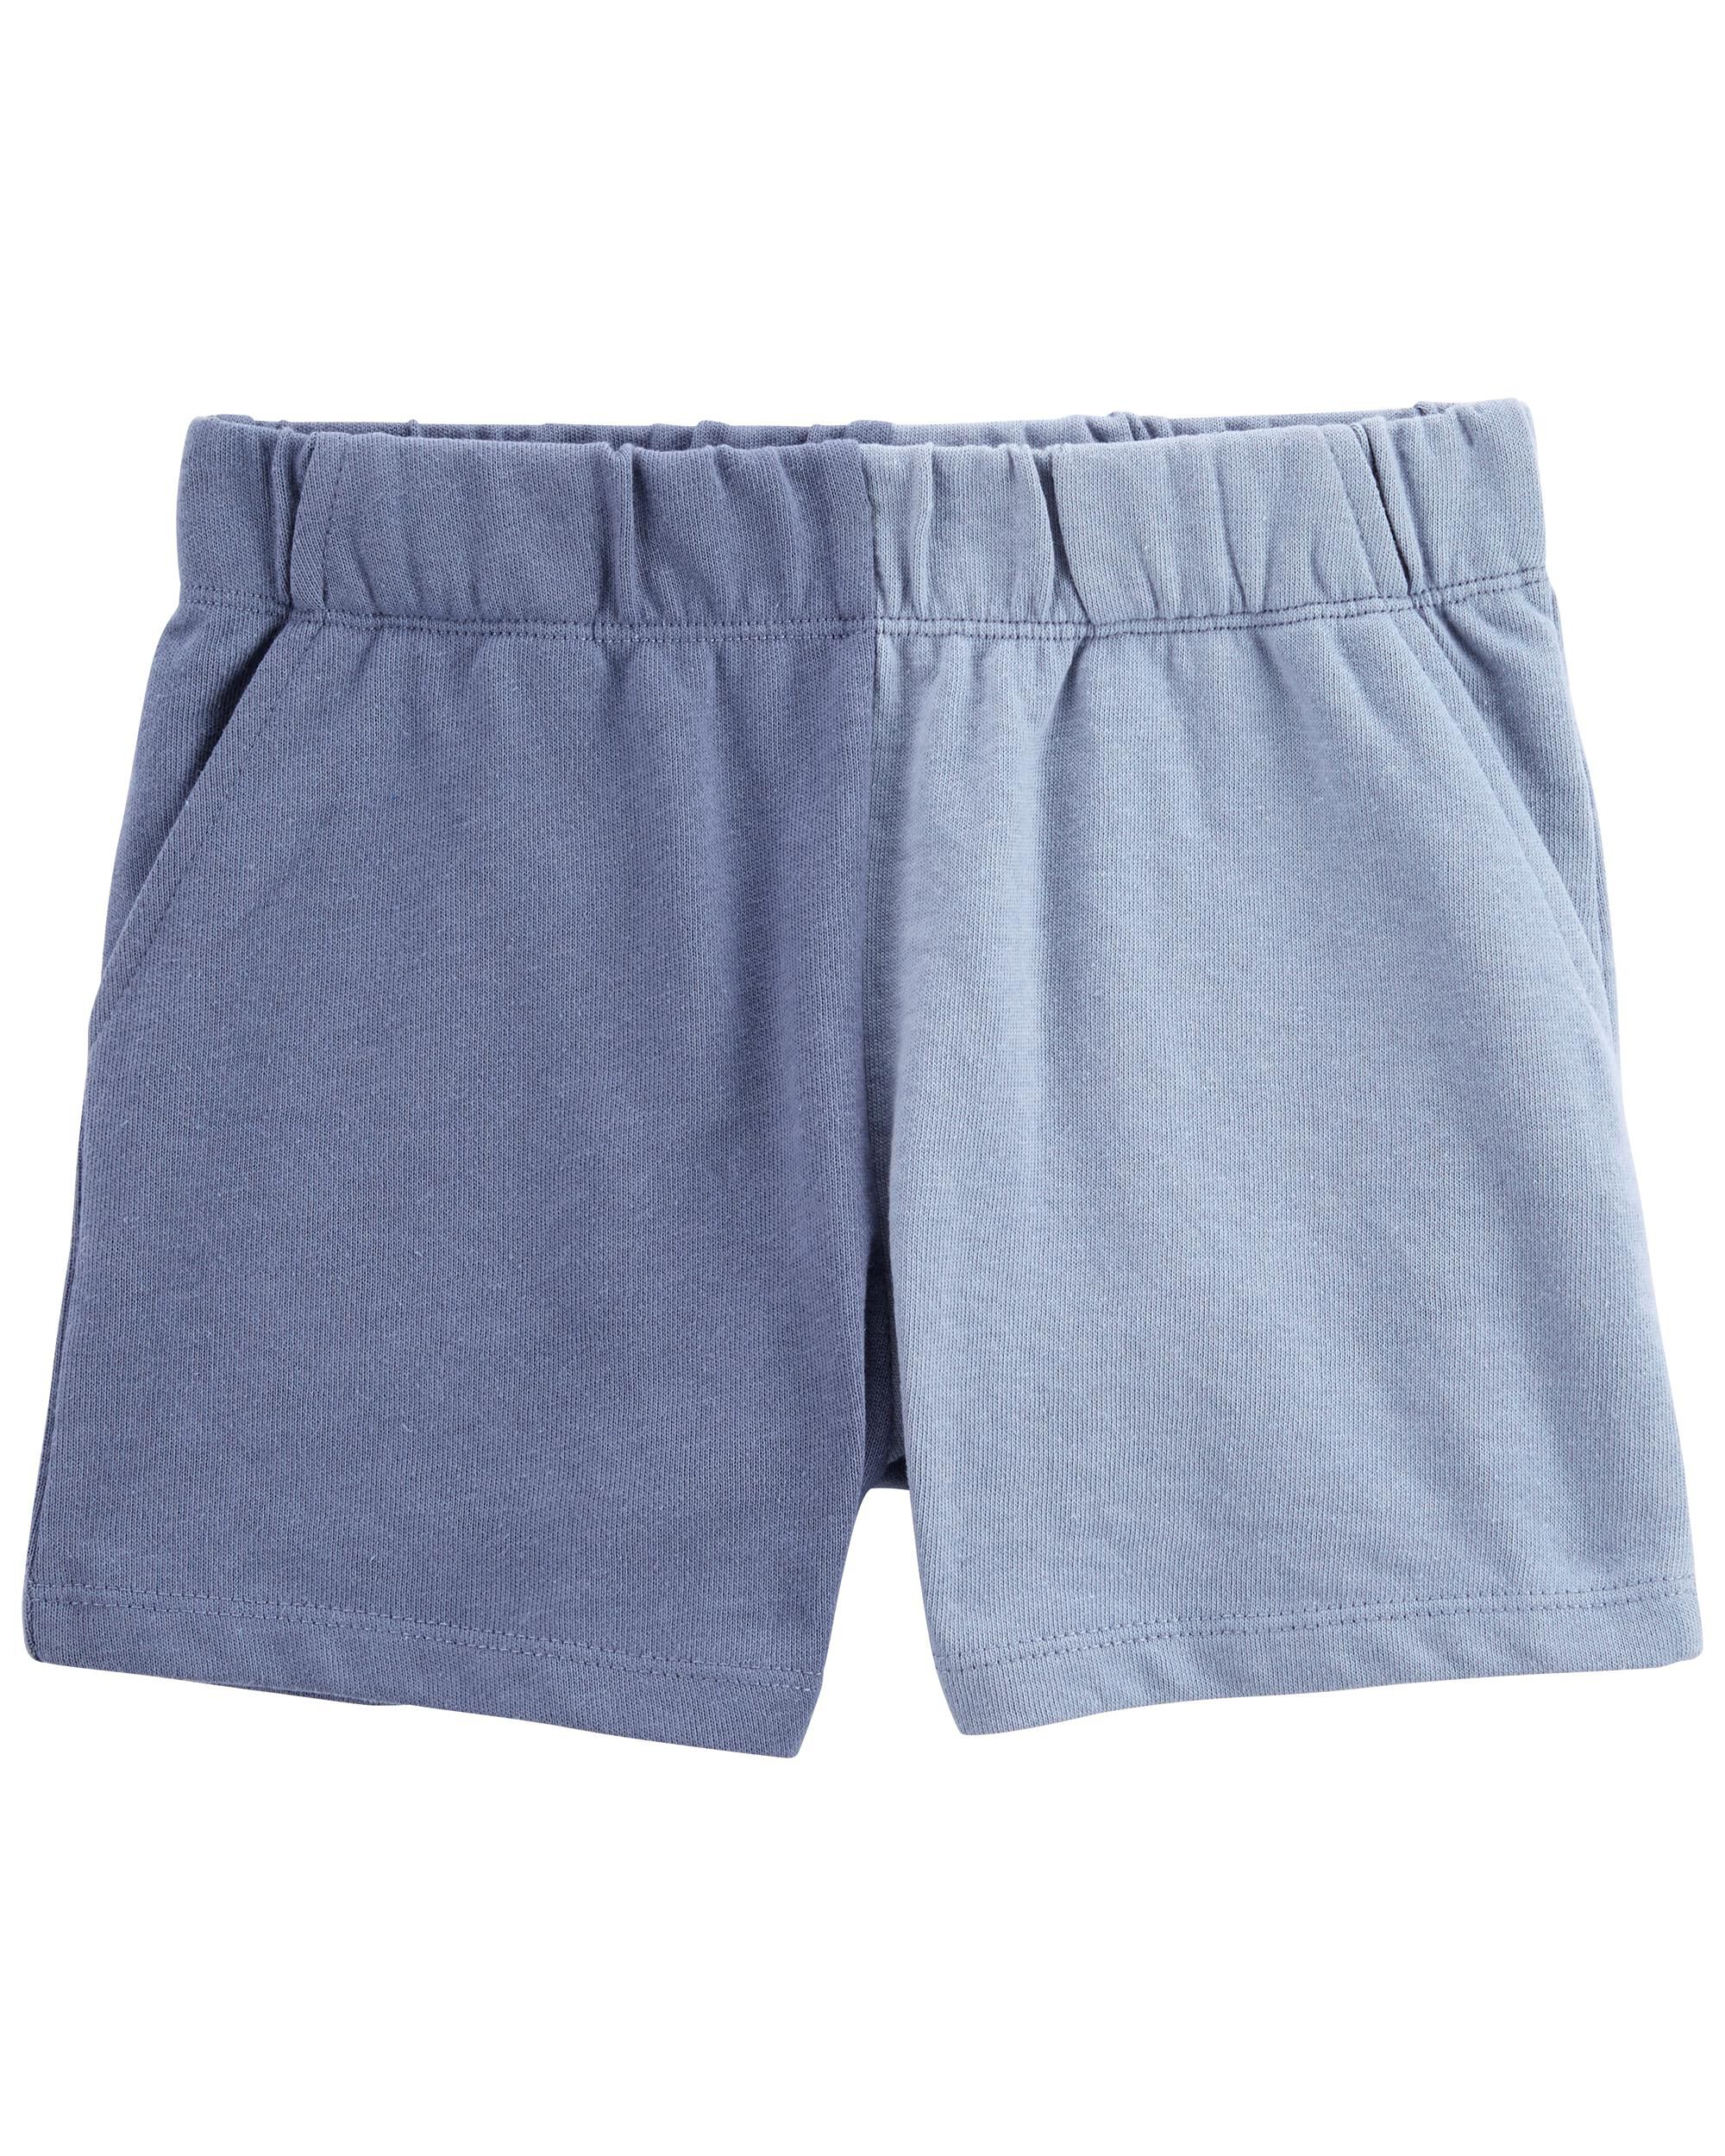 Carters Fleece Split Shorts